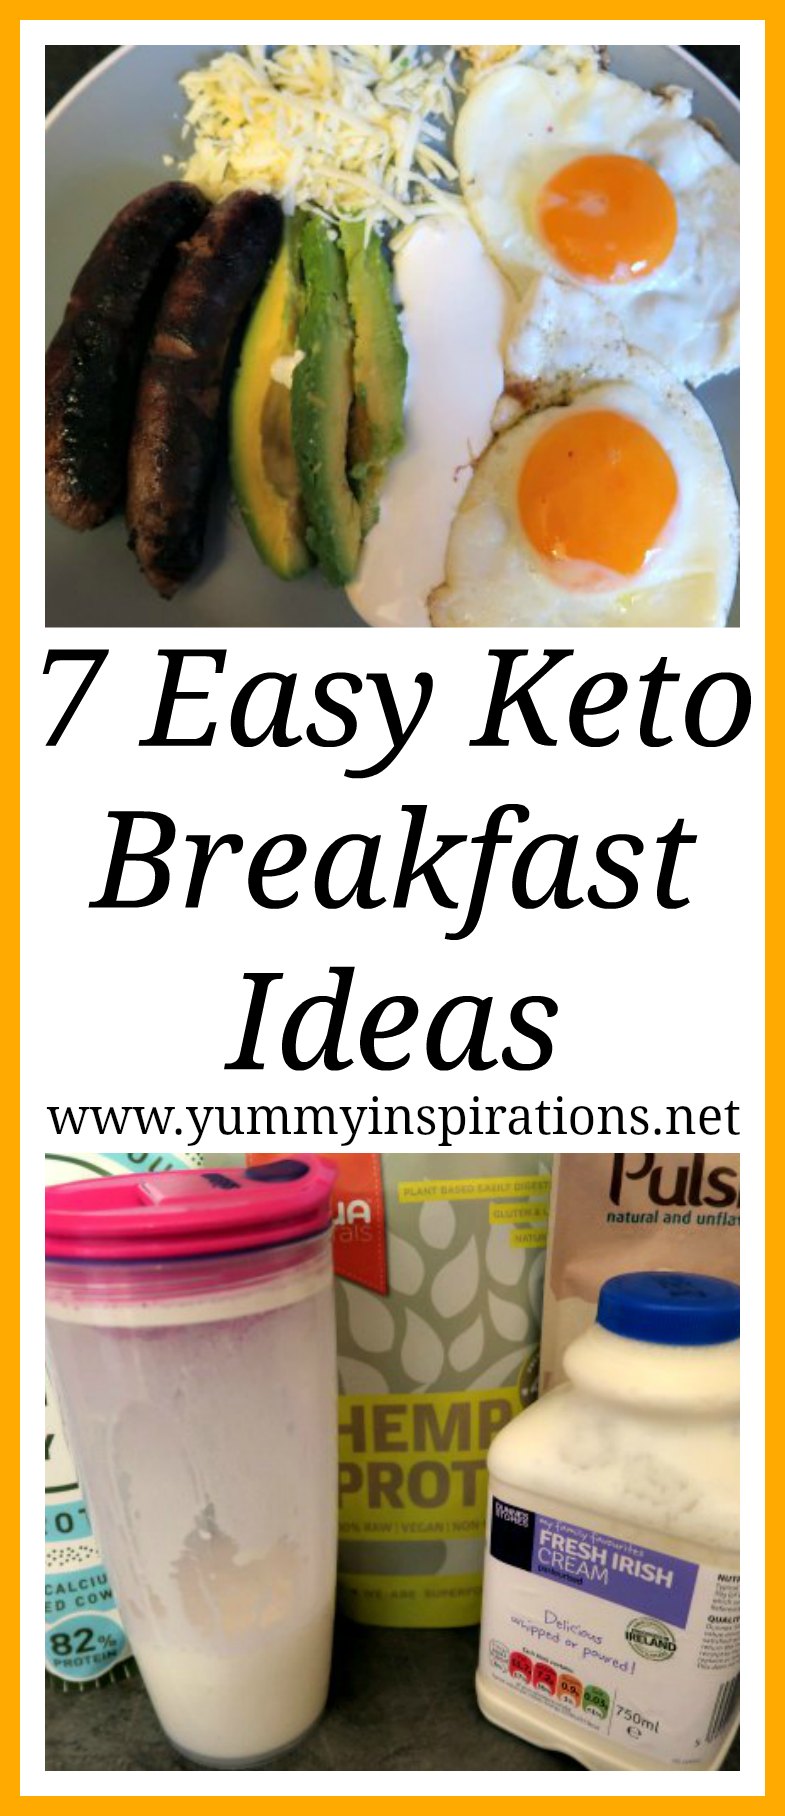 7 Easy Keto Breakfast Ideas - Low Carb & Ketogenic Diet Breakfasts